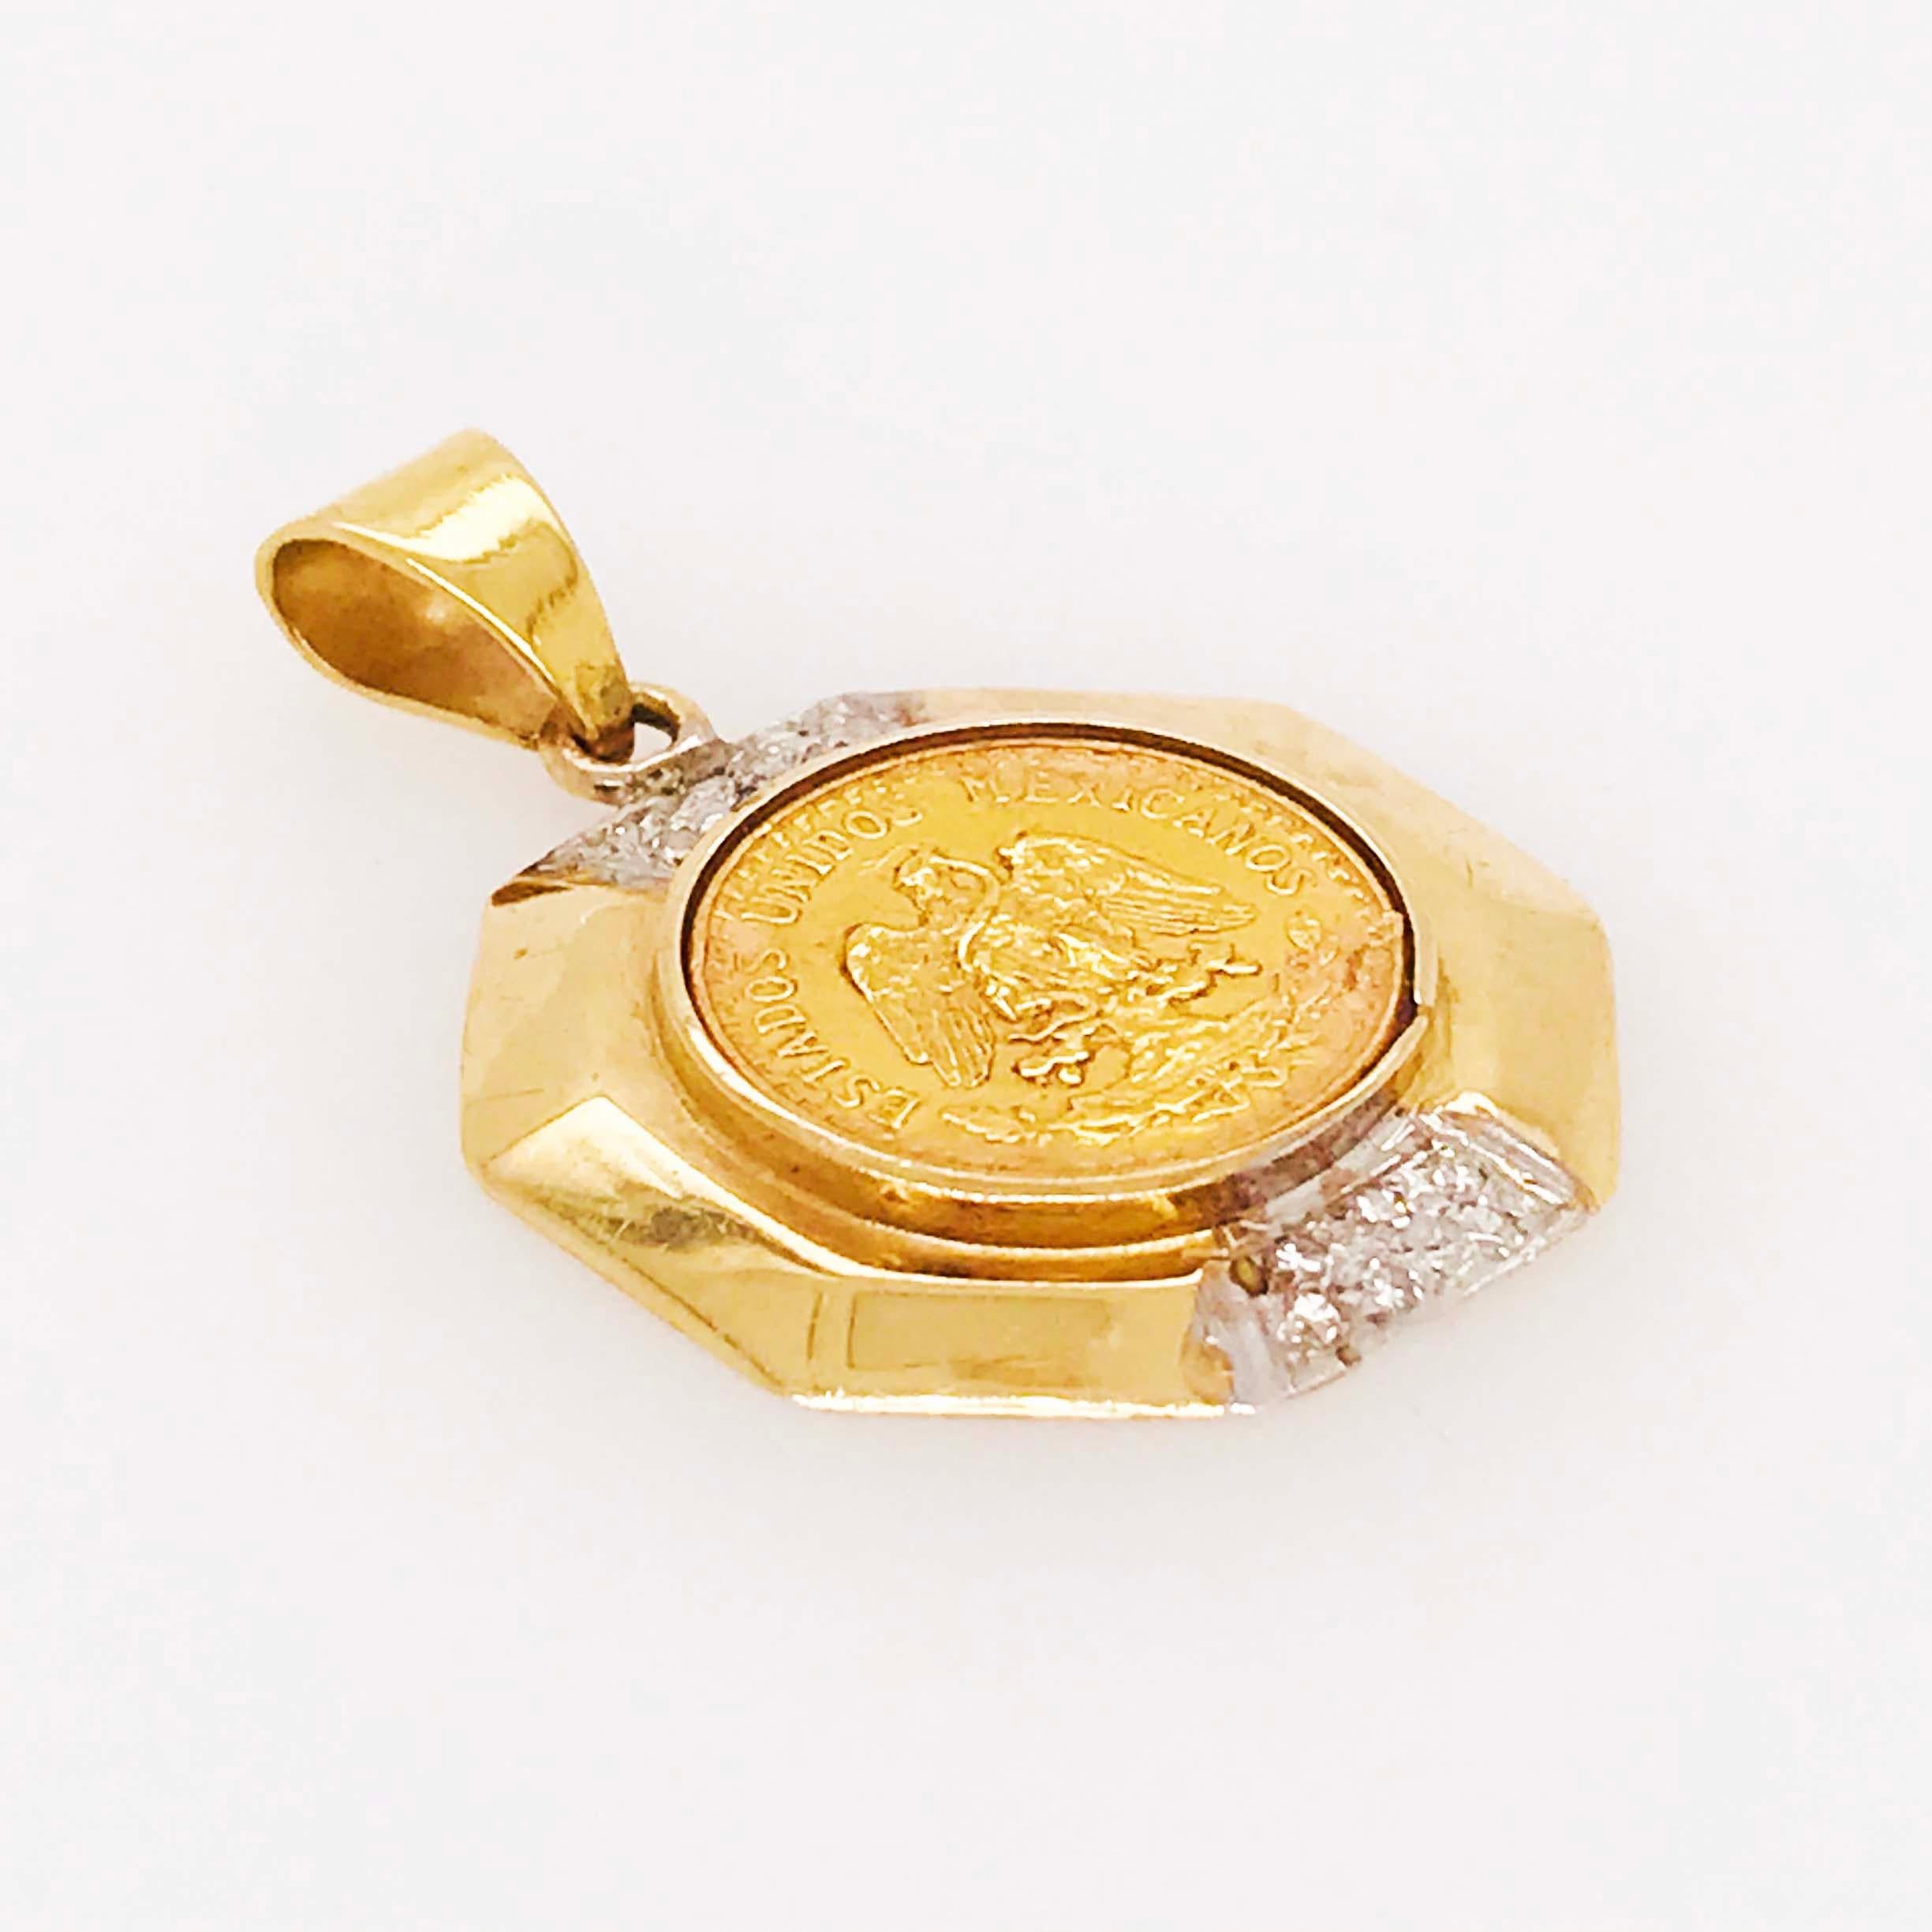 gold coin frame pendant